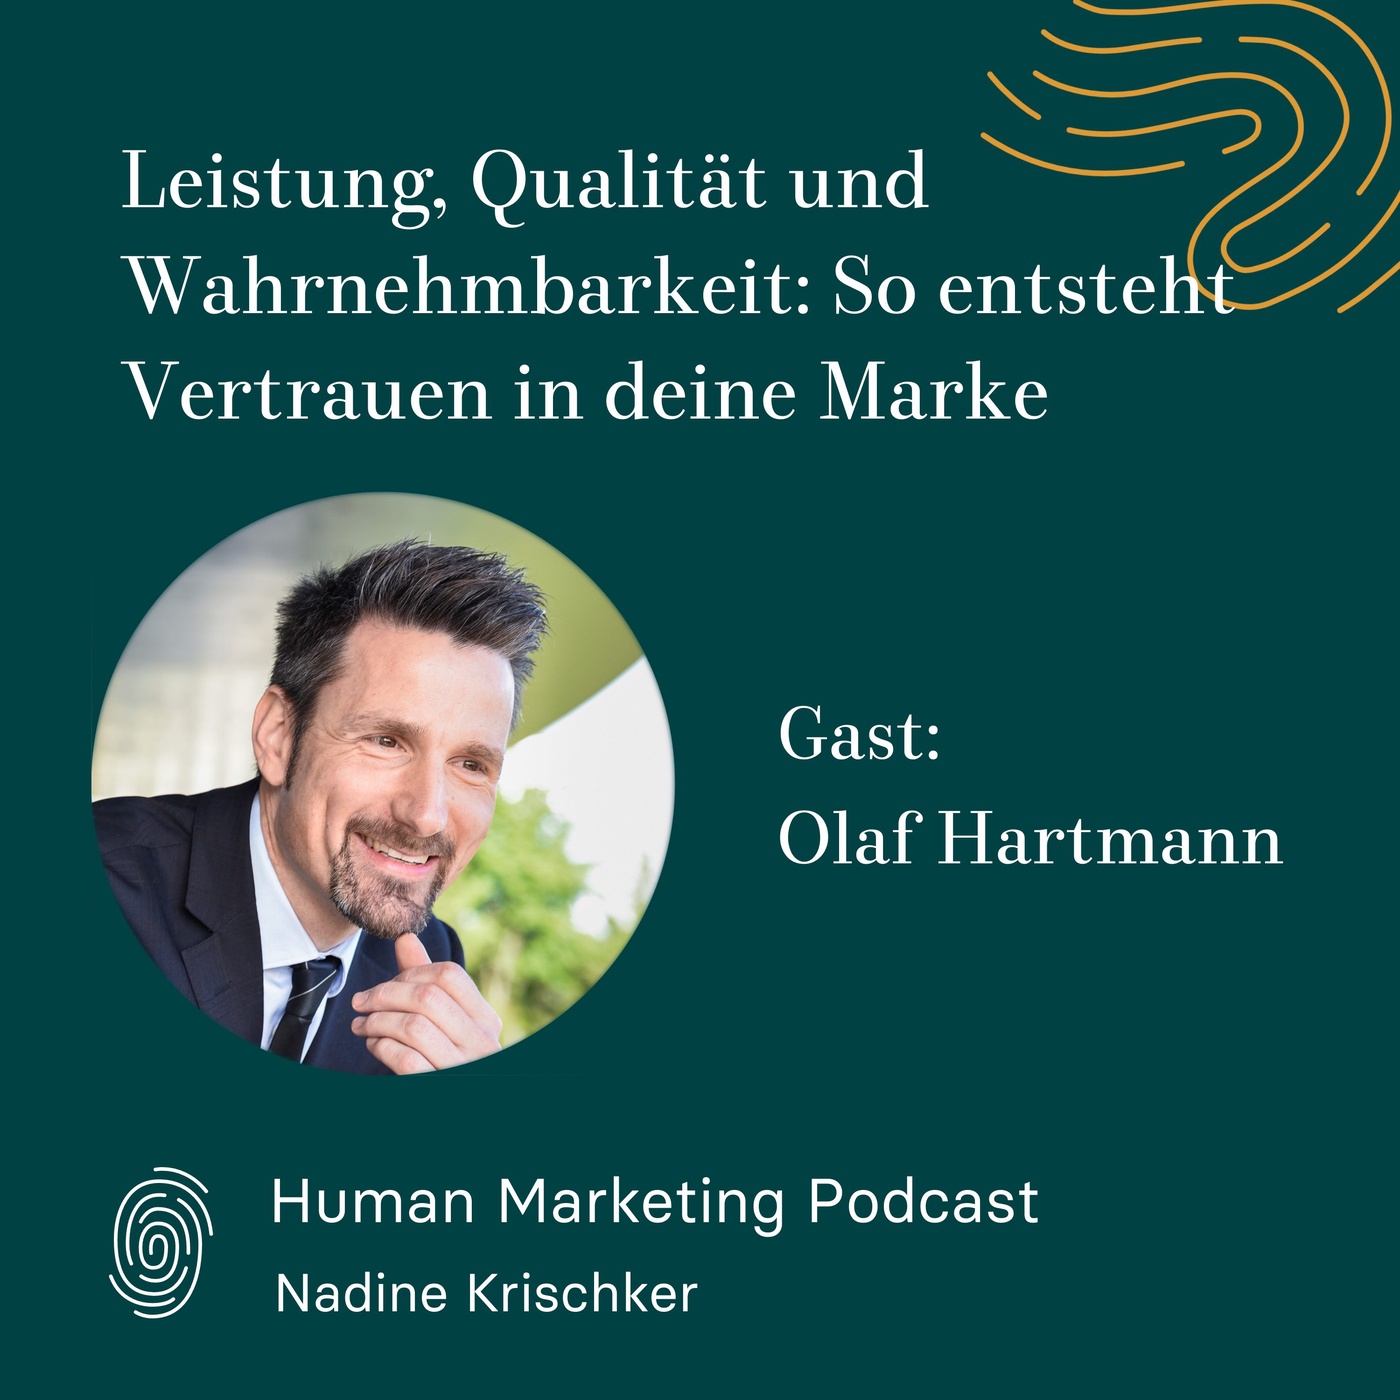 010 - Leistung, Qualität und Wahrnehmbarkeit: So entsteht Vertrauen in deine Marke (Gast: Olaf Hartmann)